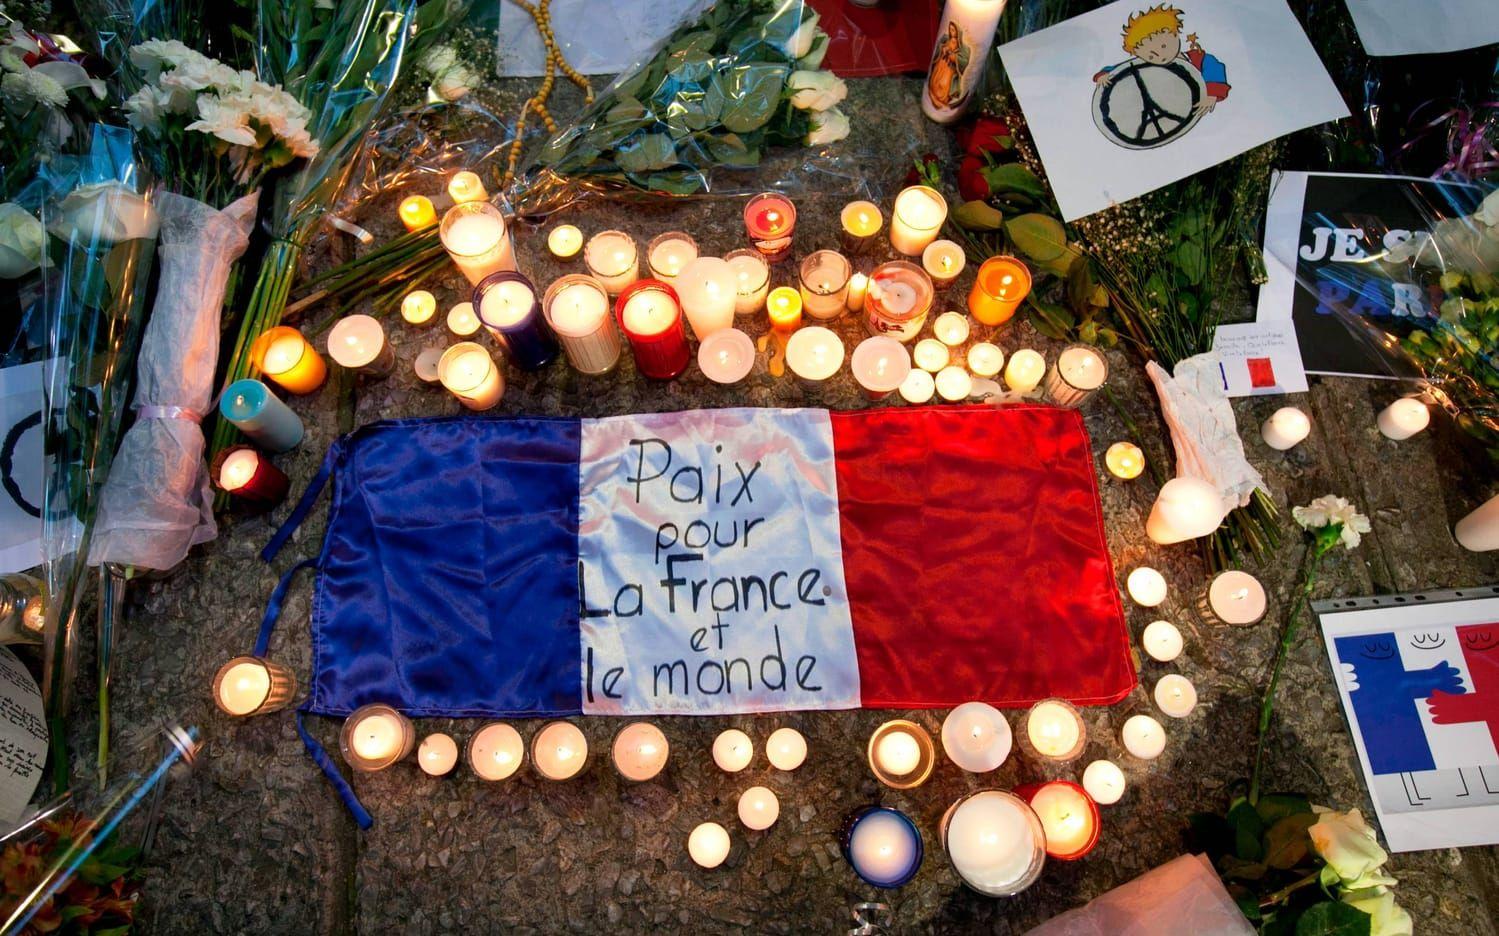 Frankrike har under de senaste åren drabbast av ett flertal terrordåd. En del experten menar att det senaste misstänkta terrordådet mindre än tre dygn innan valet kan vara till fördel för högerextrema Marine Le Pen. Bild: TT